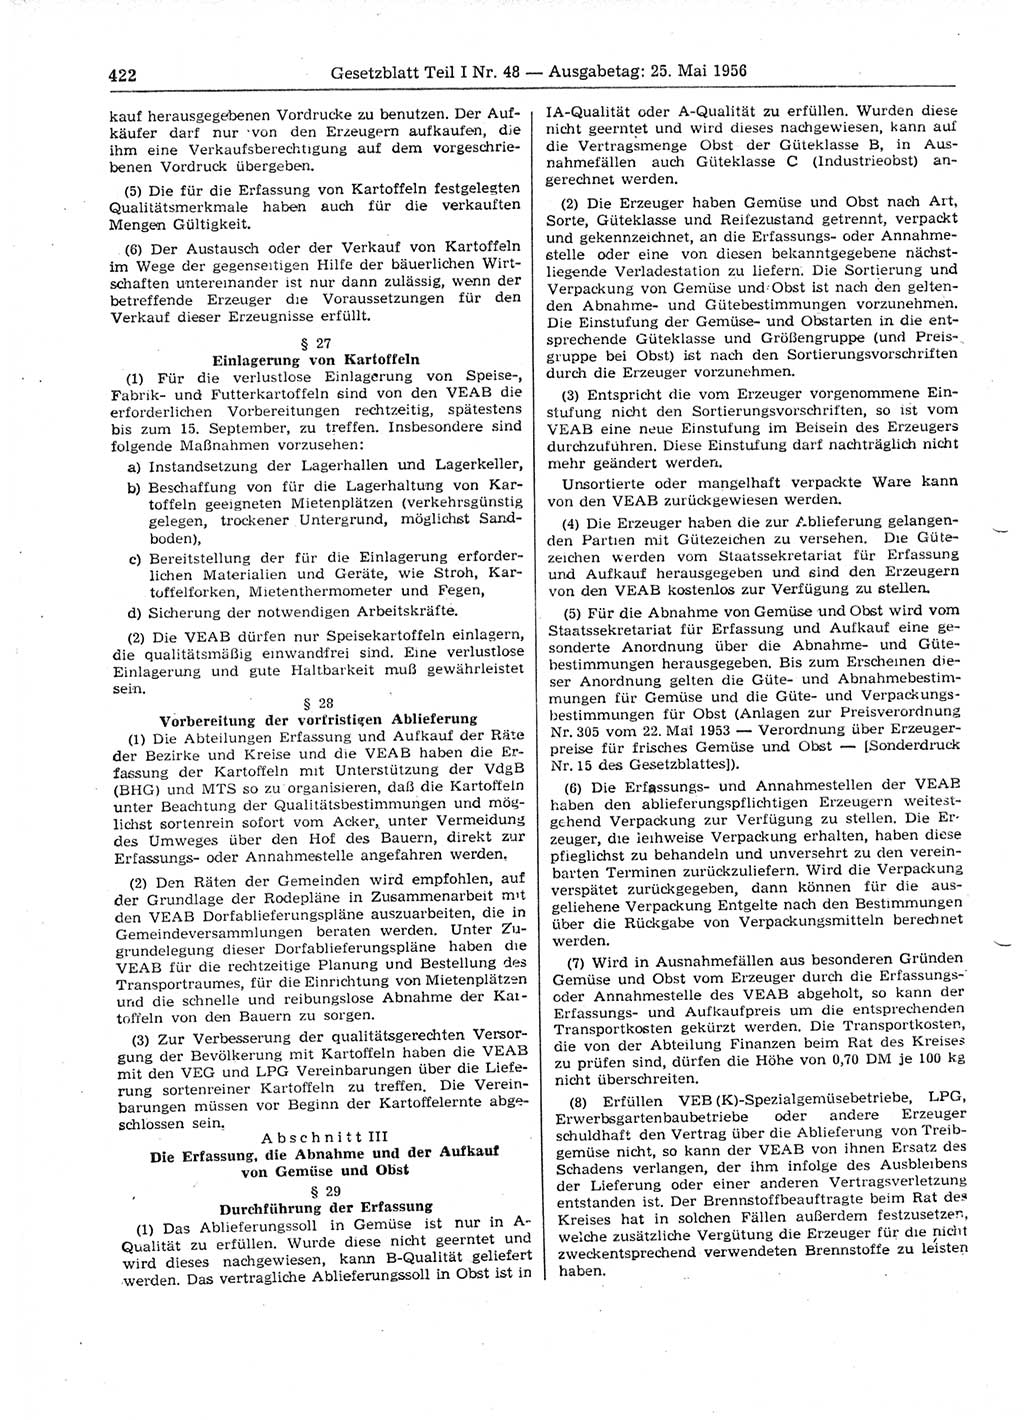 Gesetzblatt (GBl.) der Deutschen Demokratischen Republik (DDR) Teil Ⅰ 1956, Seite 422 (GBl. DDR Ⅰ 1956, S. 422)